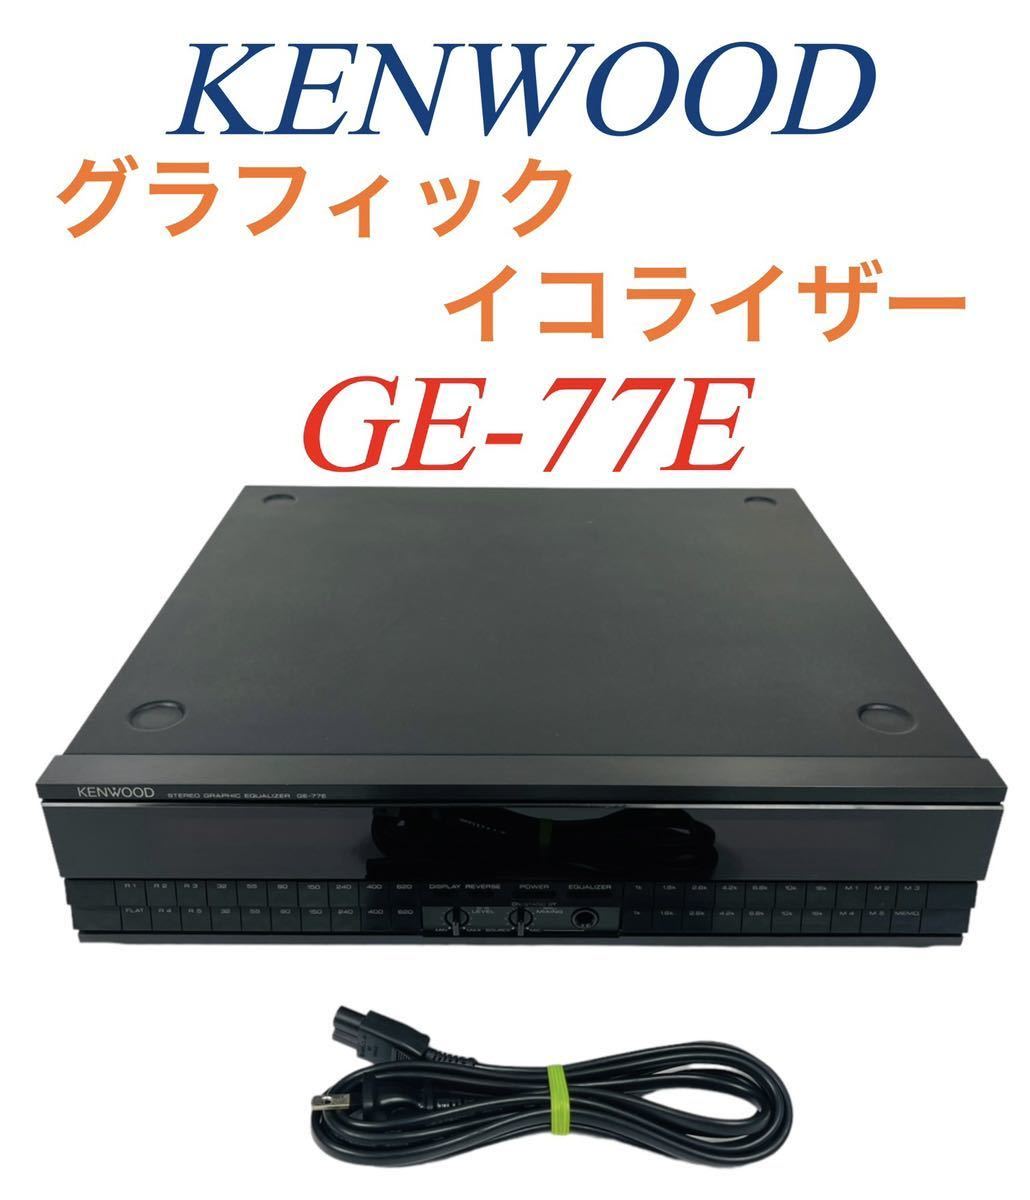 KENWOOD ケンウッド 14バンド スペアナ Stereo Graphic Equalizer ステレオグラフィックイコライザー GE-77E